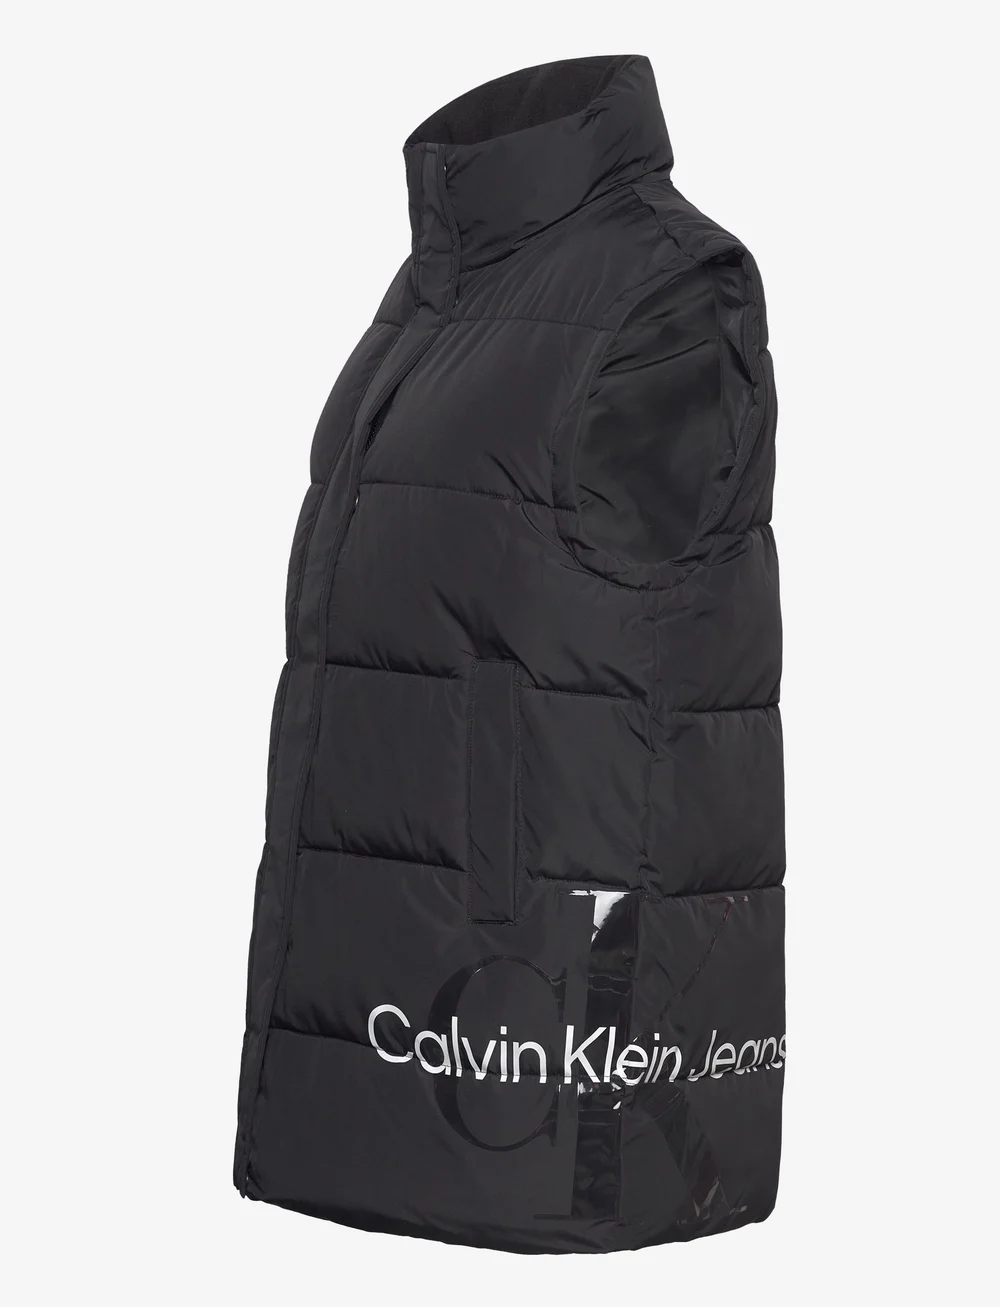 Calvin Klein Jeans Blown Up Ck Long Vest - Jackets